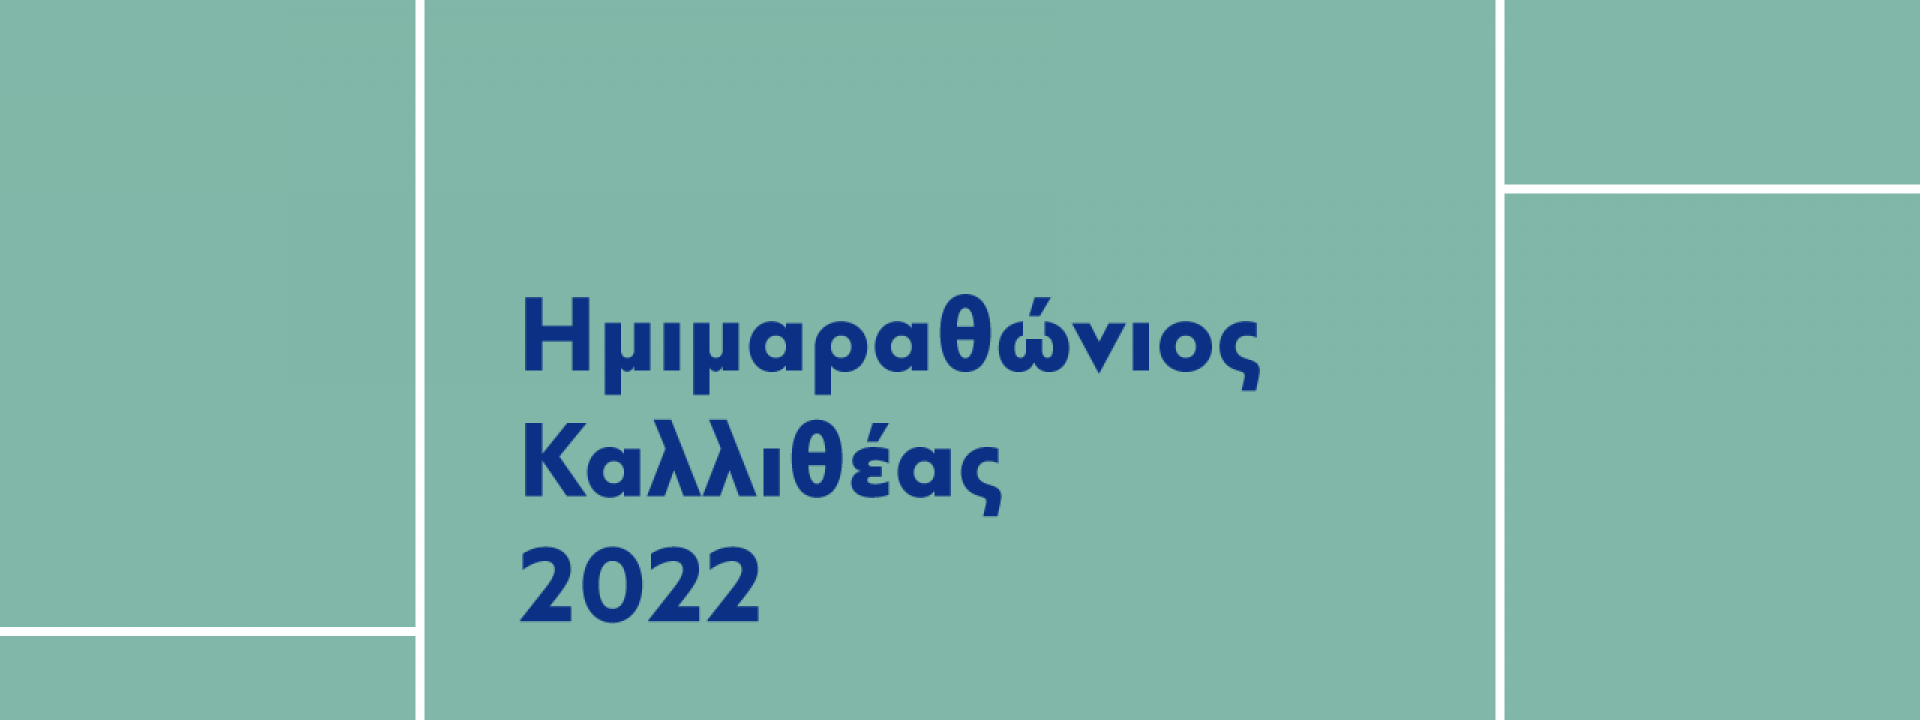 Ημιμαραθώνιος Καλλιθέας 2022 - Εικόνα